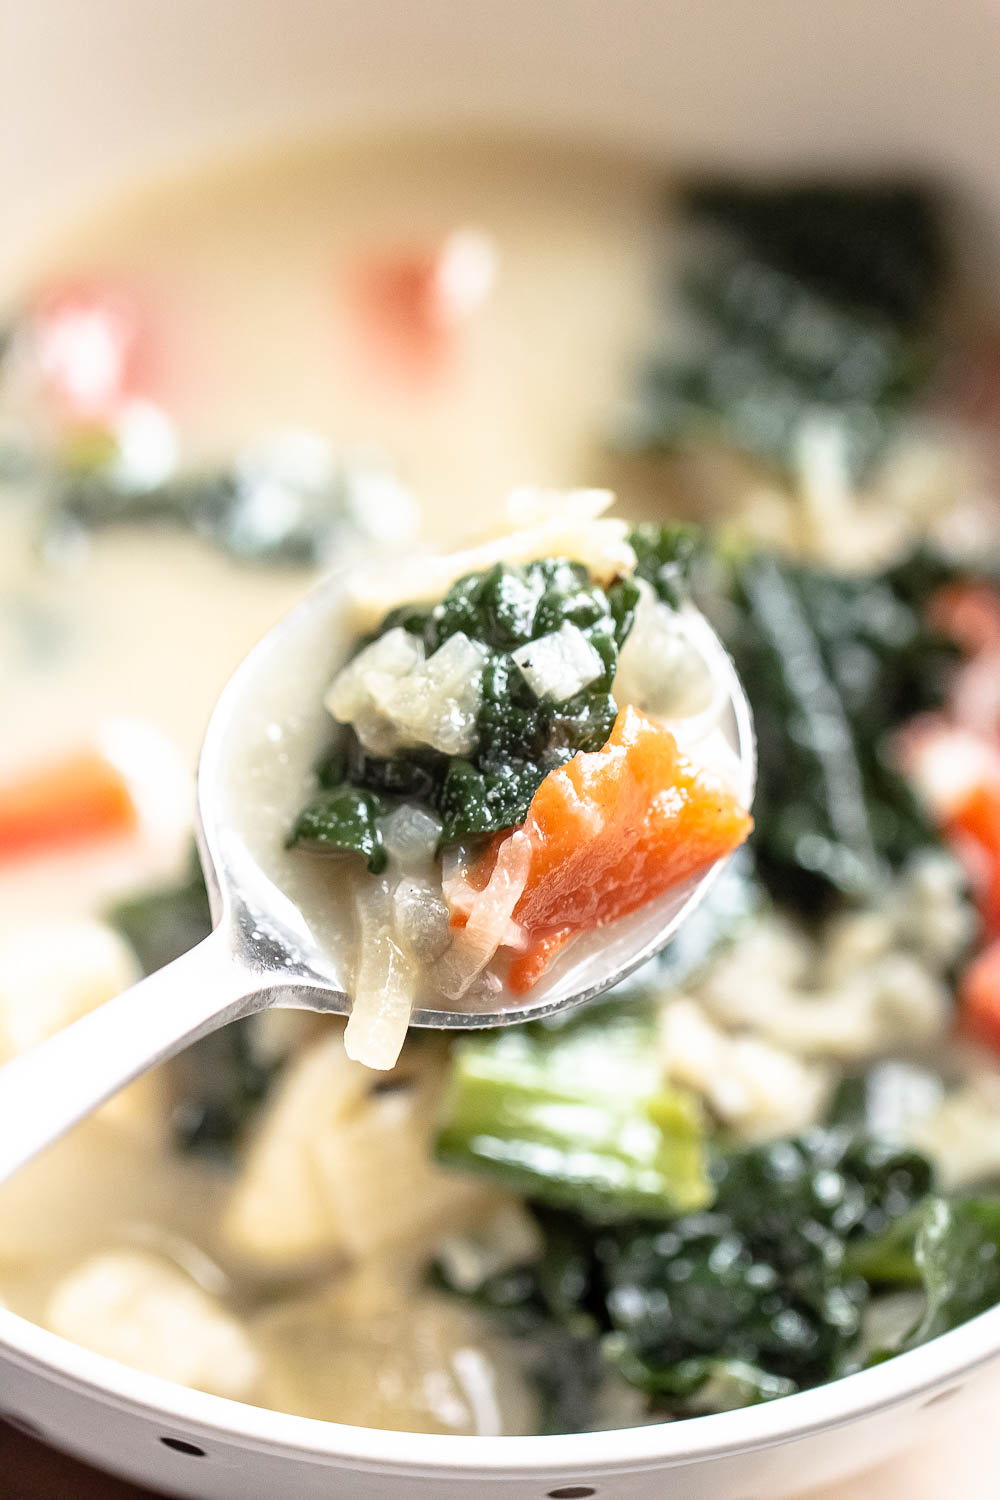 Zuppa Toscana Vegetariana. ¡Ahora puedes tener tu sopa favorita de Olive Garden en casa con esta saludable Zuppa Toscana! ¡Es la comida realmente reconfortante lo mejor!